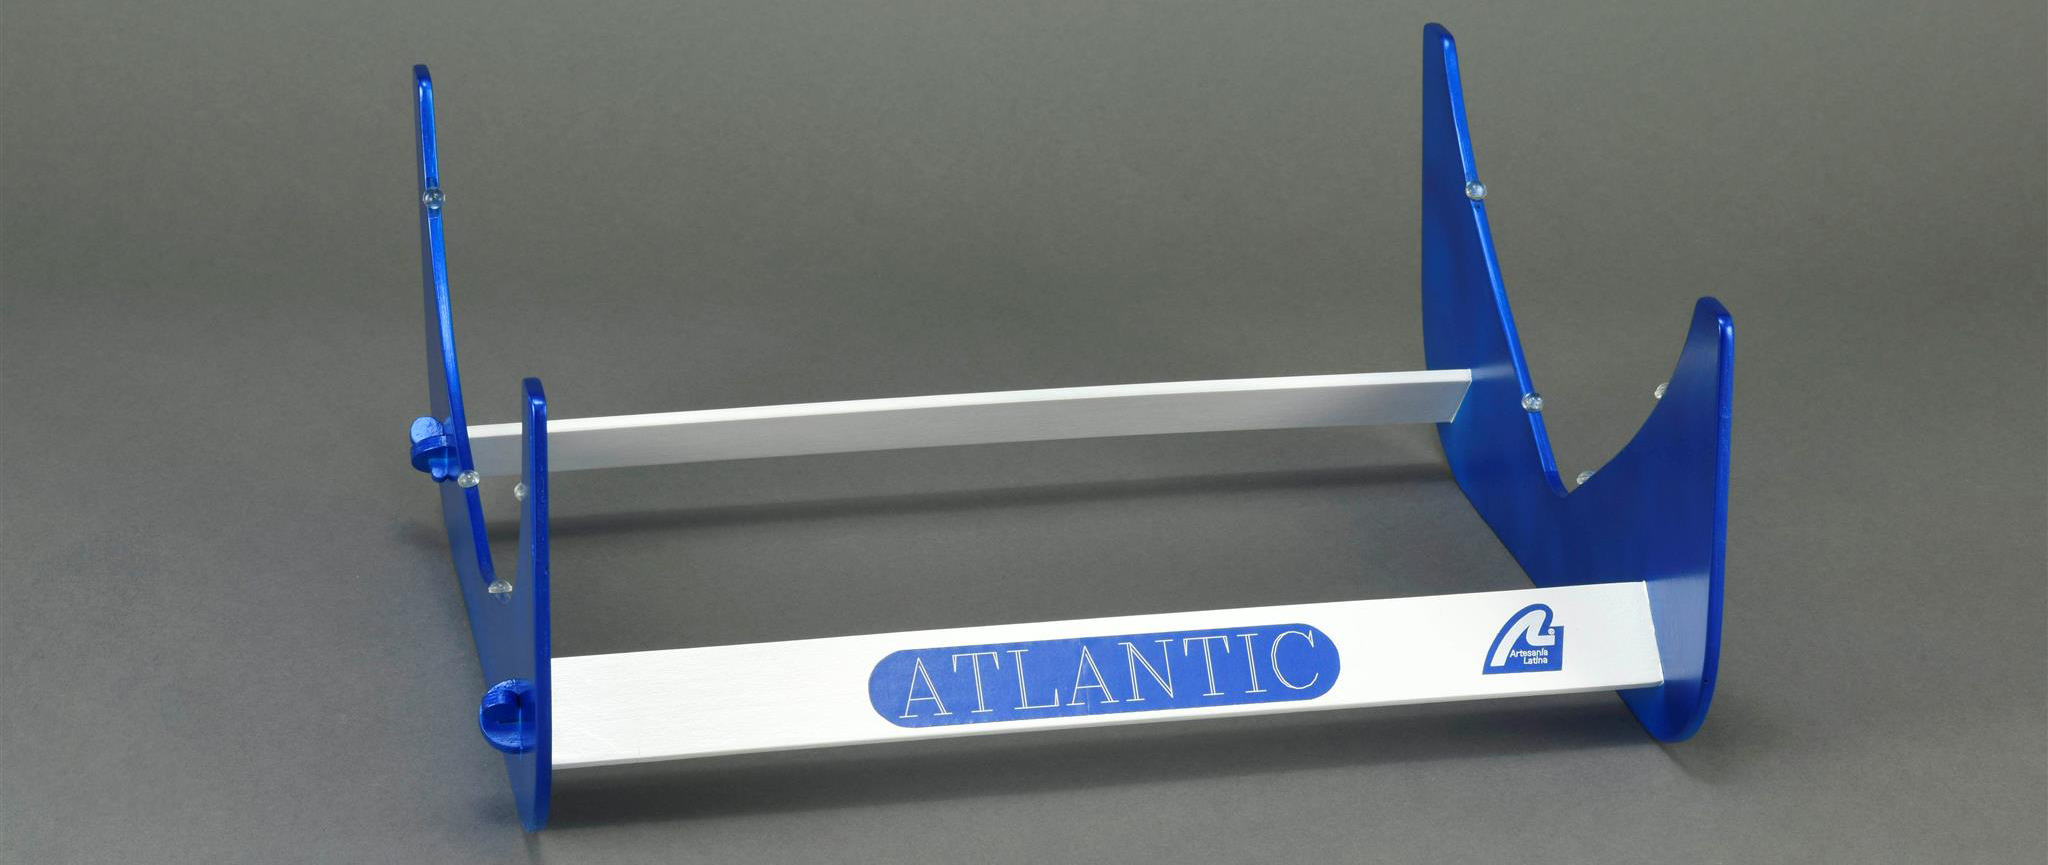 Maqueta Barco R/C Atlantic (20210) Navegable e Iluminable a Escala 1:50 de Artesanía Latina.